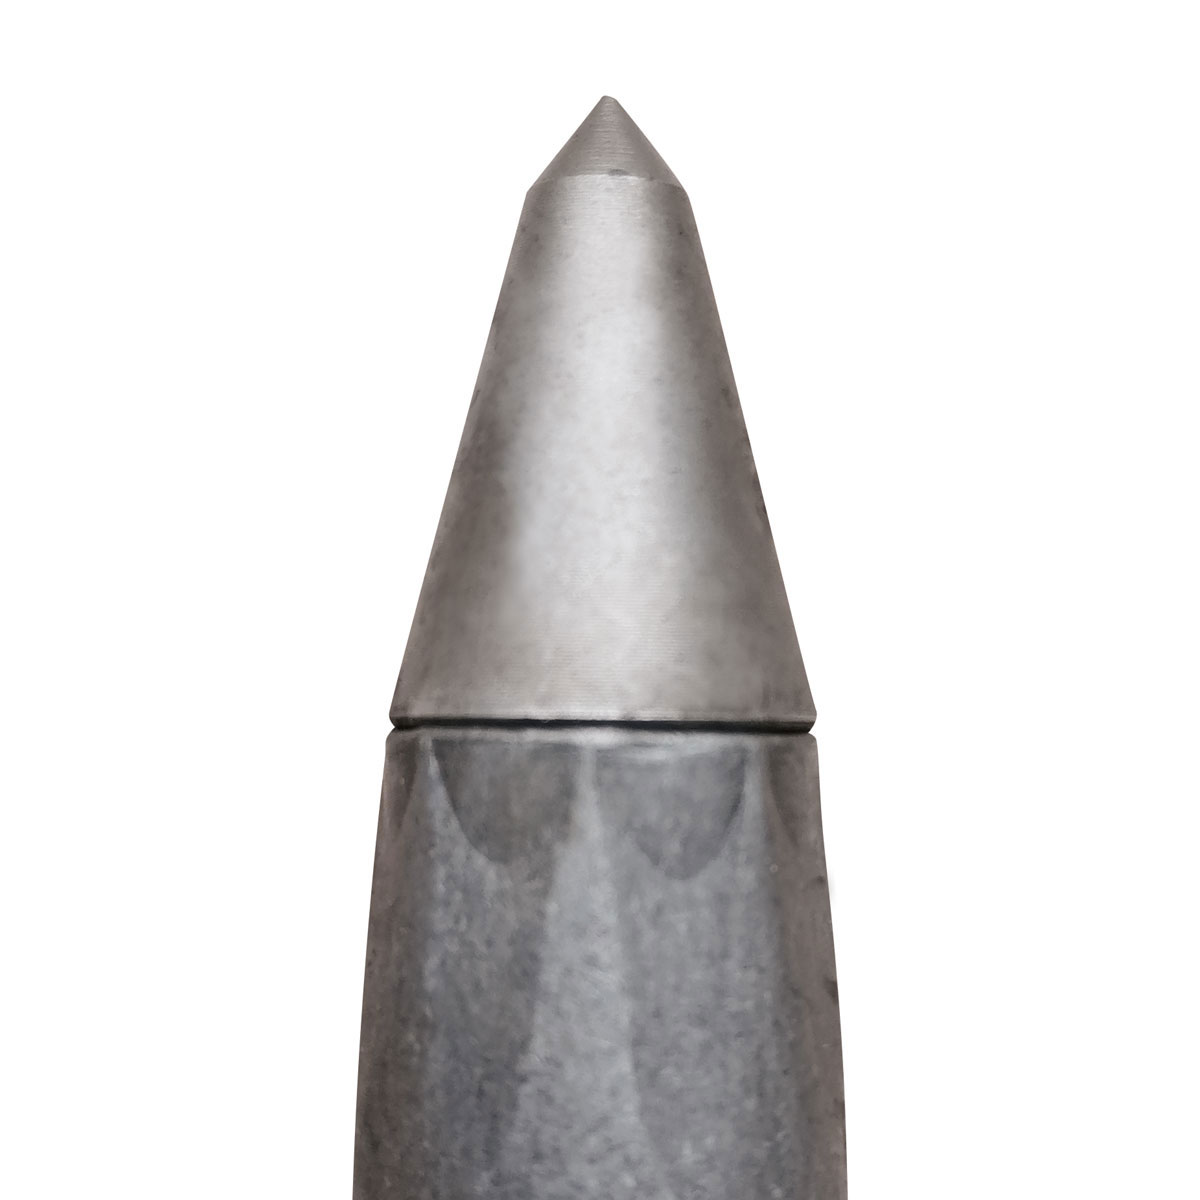 Eisenvermessungsrohre 3/8" - Länge 150 mm mit Stahlspitze